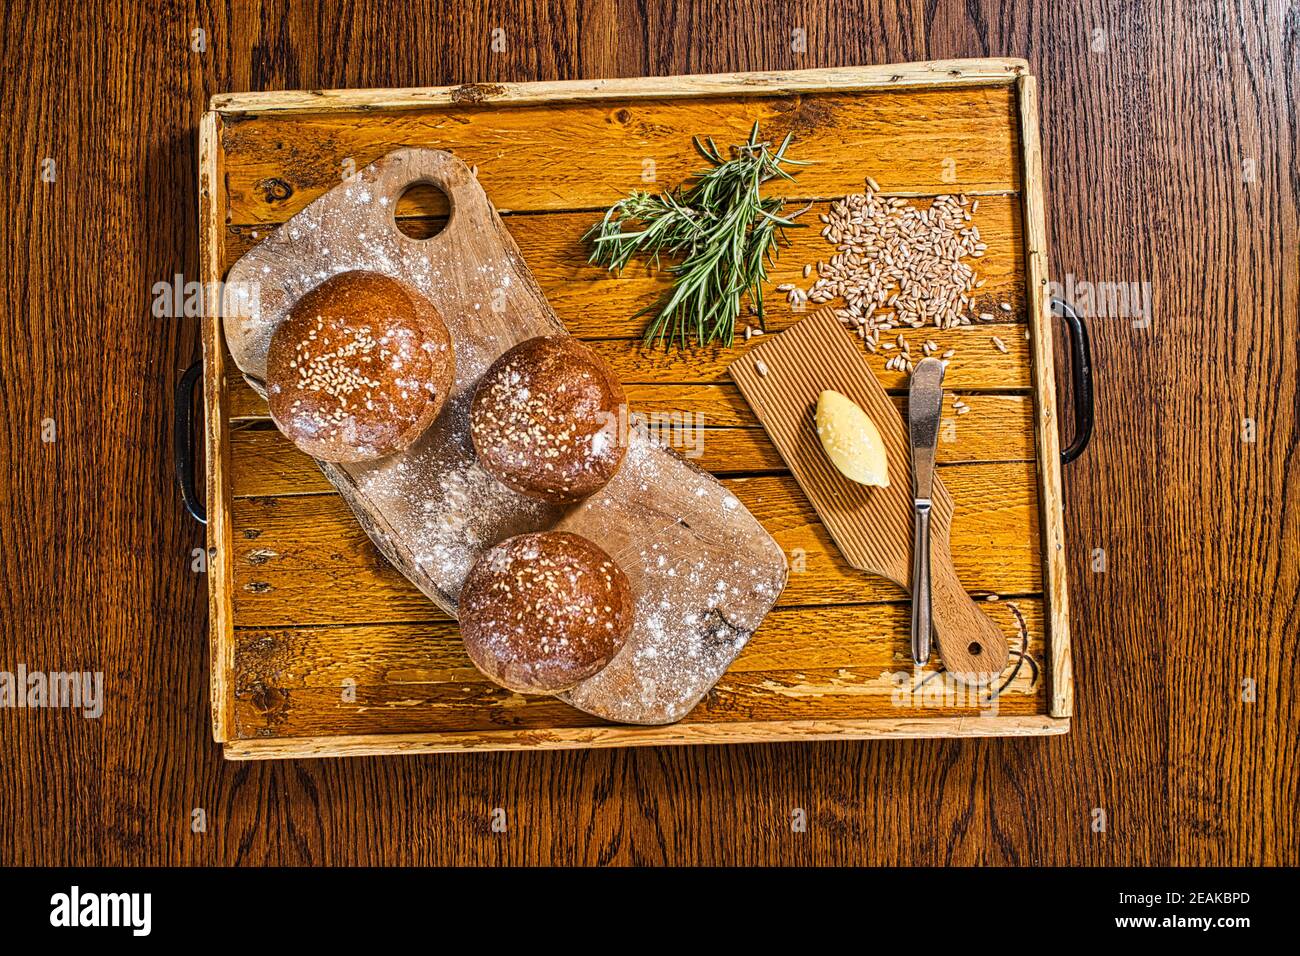 GRAN BRETAGNA / Inghilterra / panini appena sfornati di segale e grano fatti in casa / produzione di pane artigianale. Foto Stock